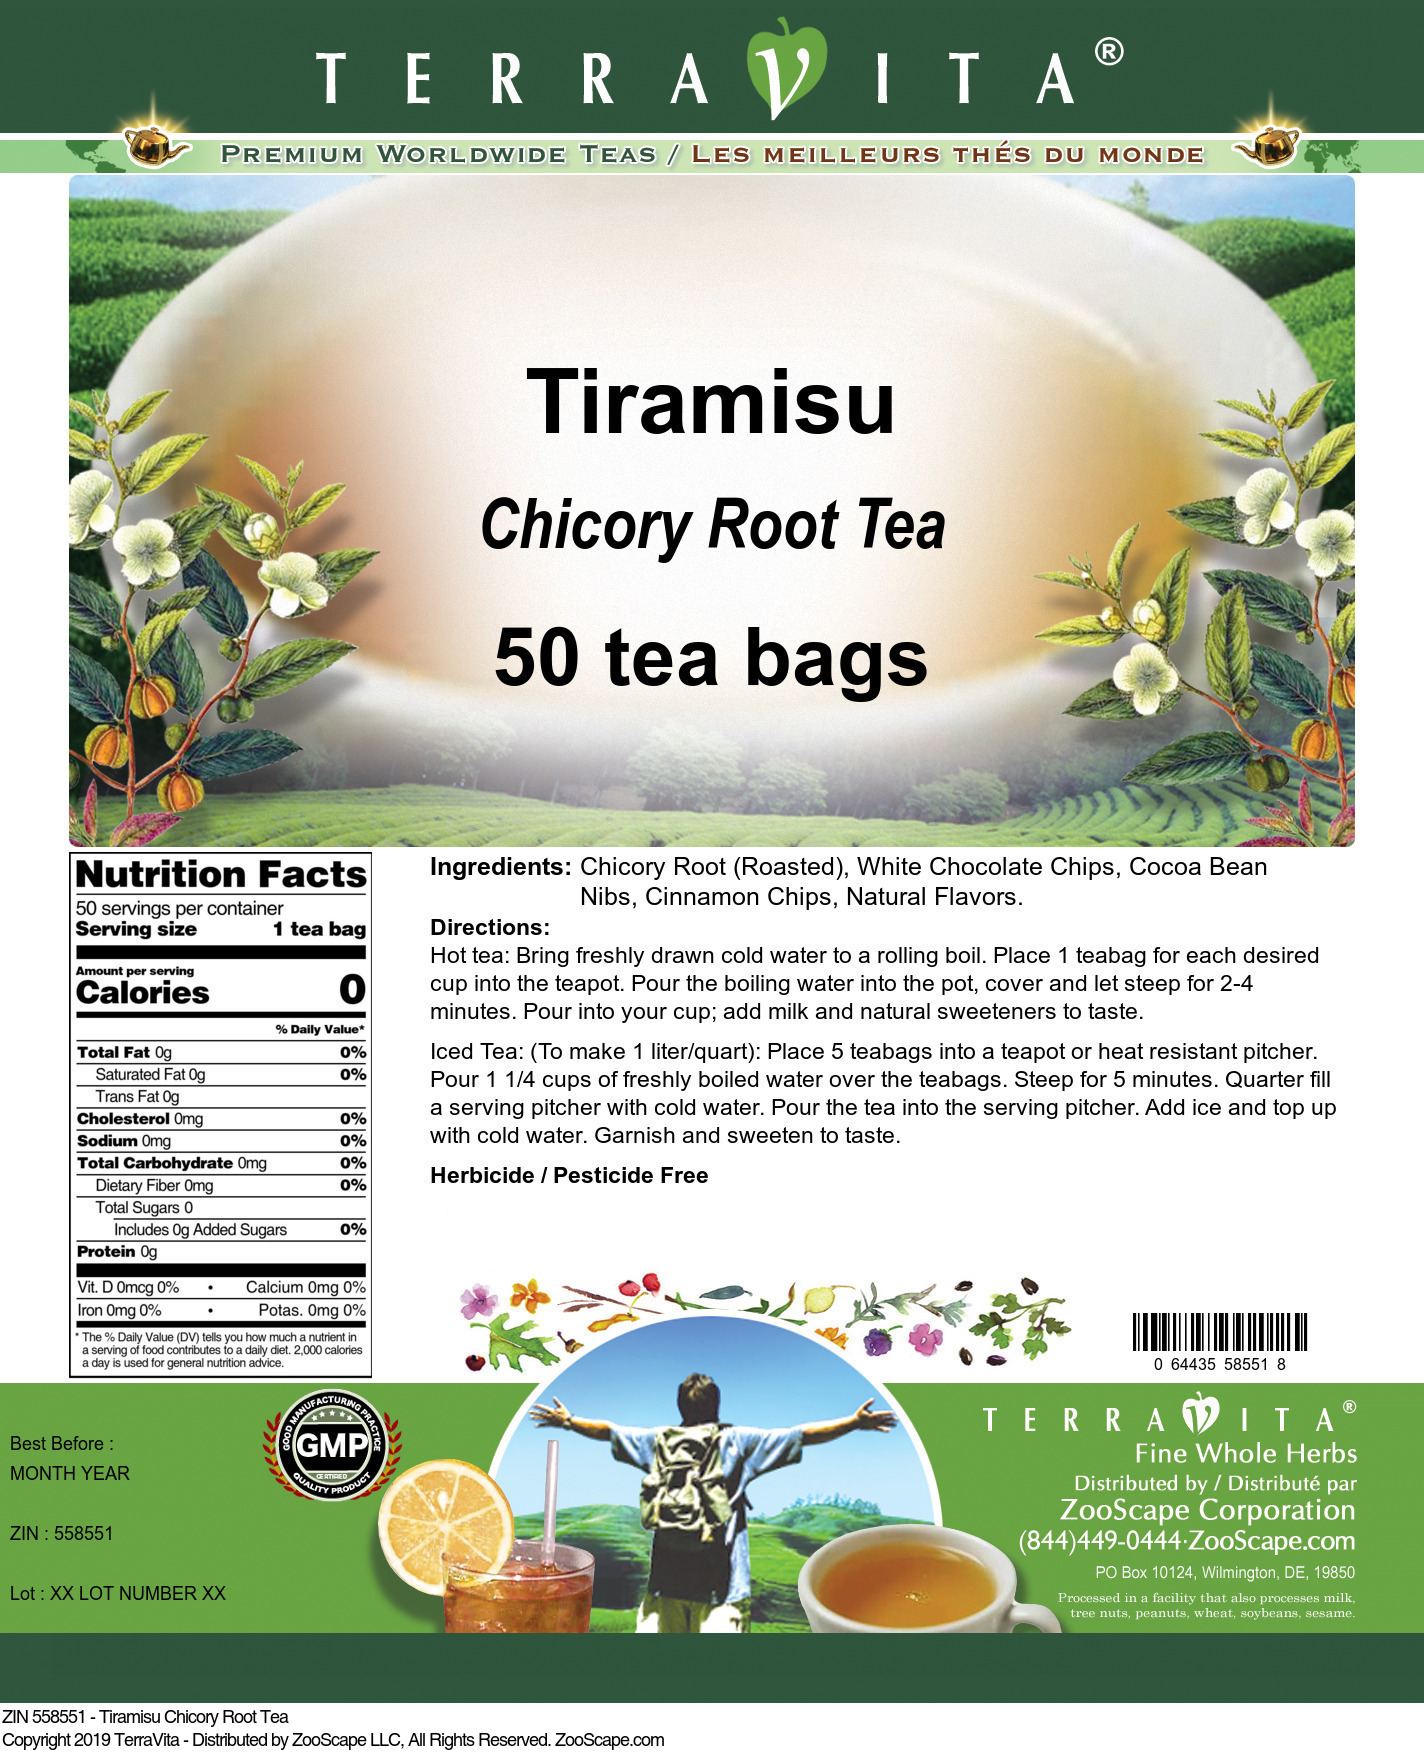 Tiramisu Chicory Root Tea - Label